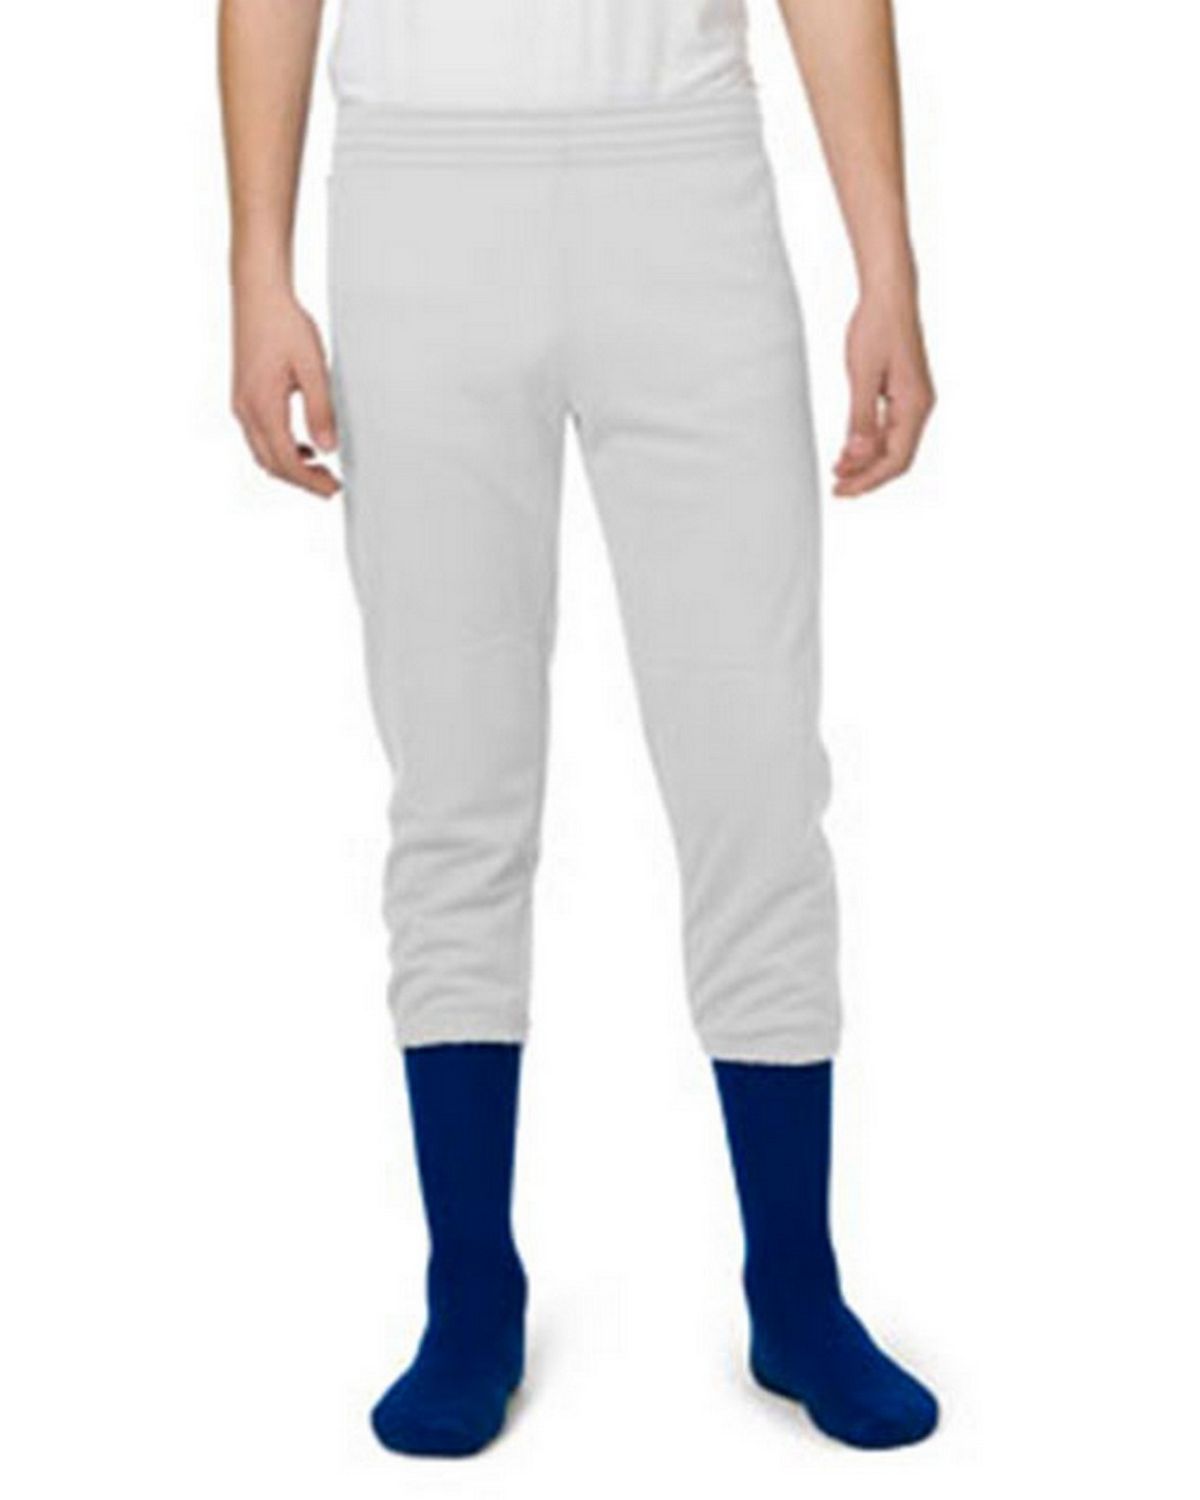 Majestic Youth Baseball Pants Size Chart